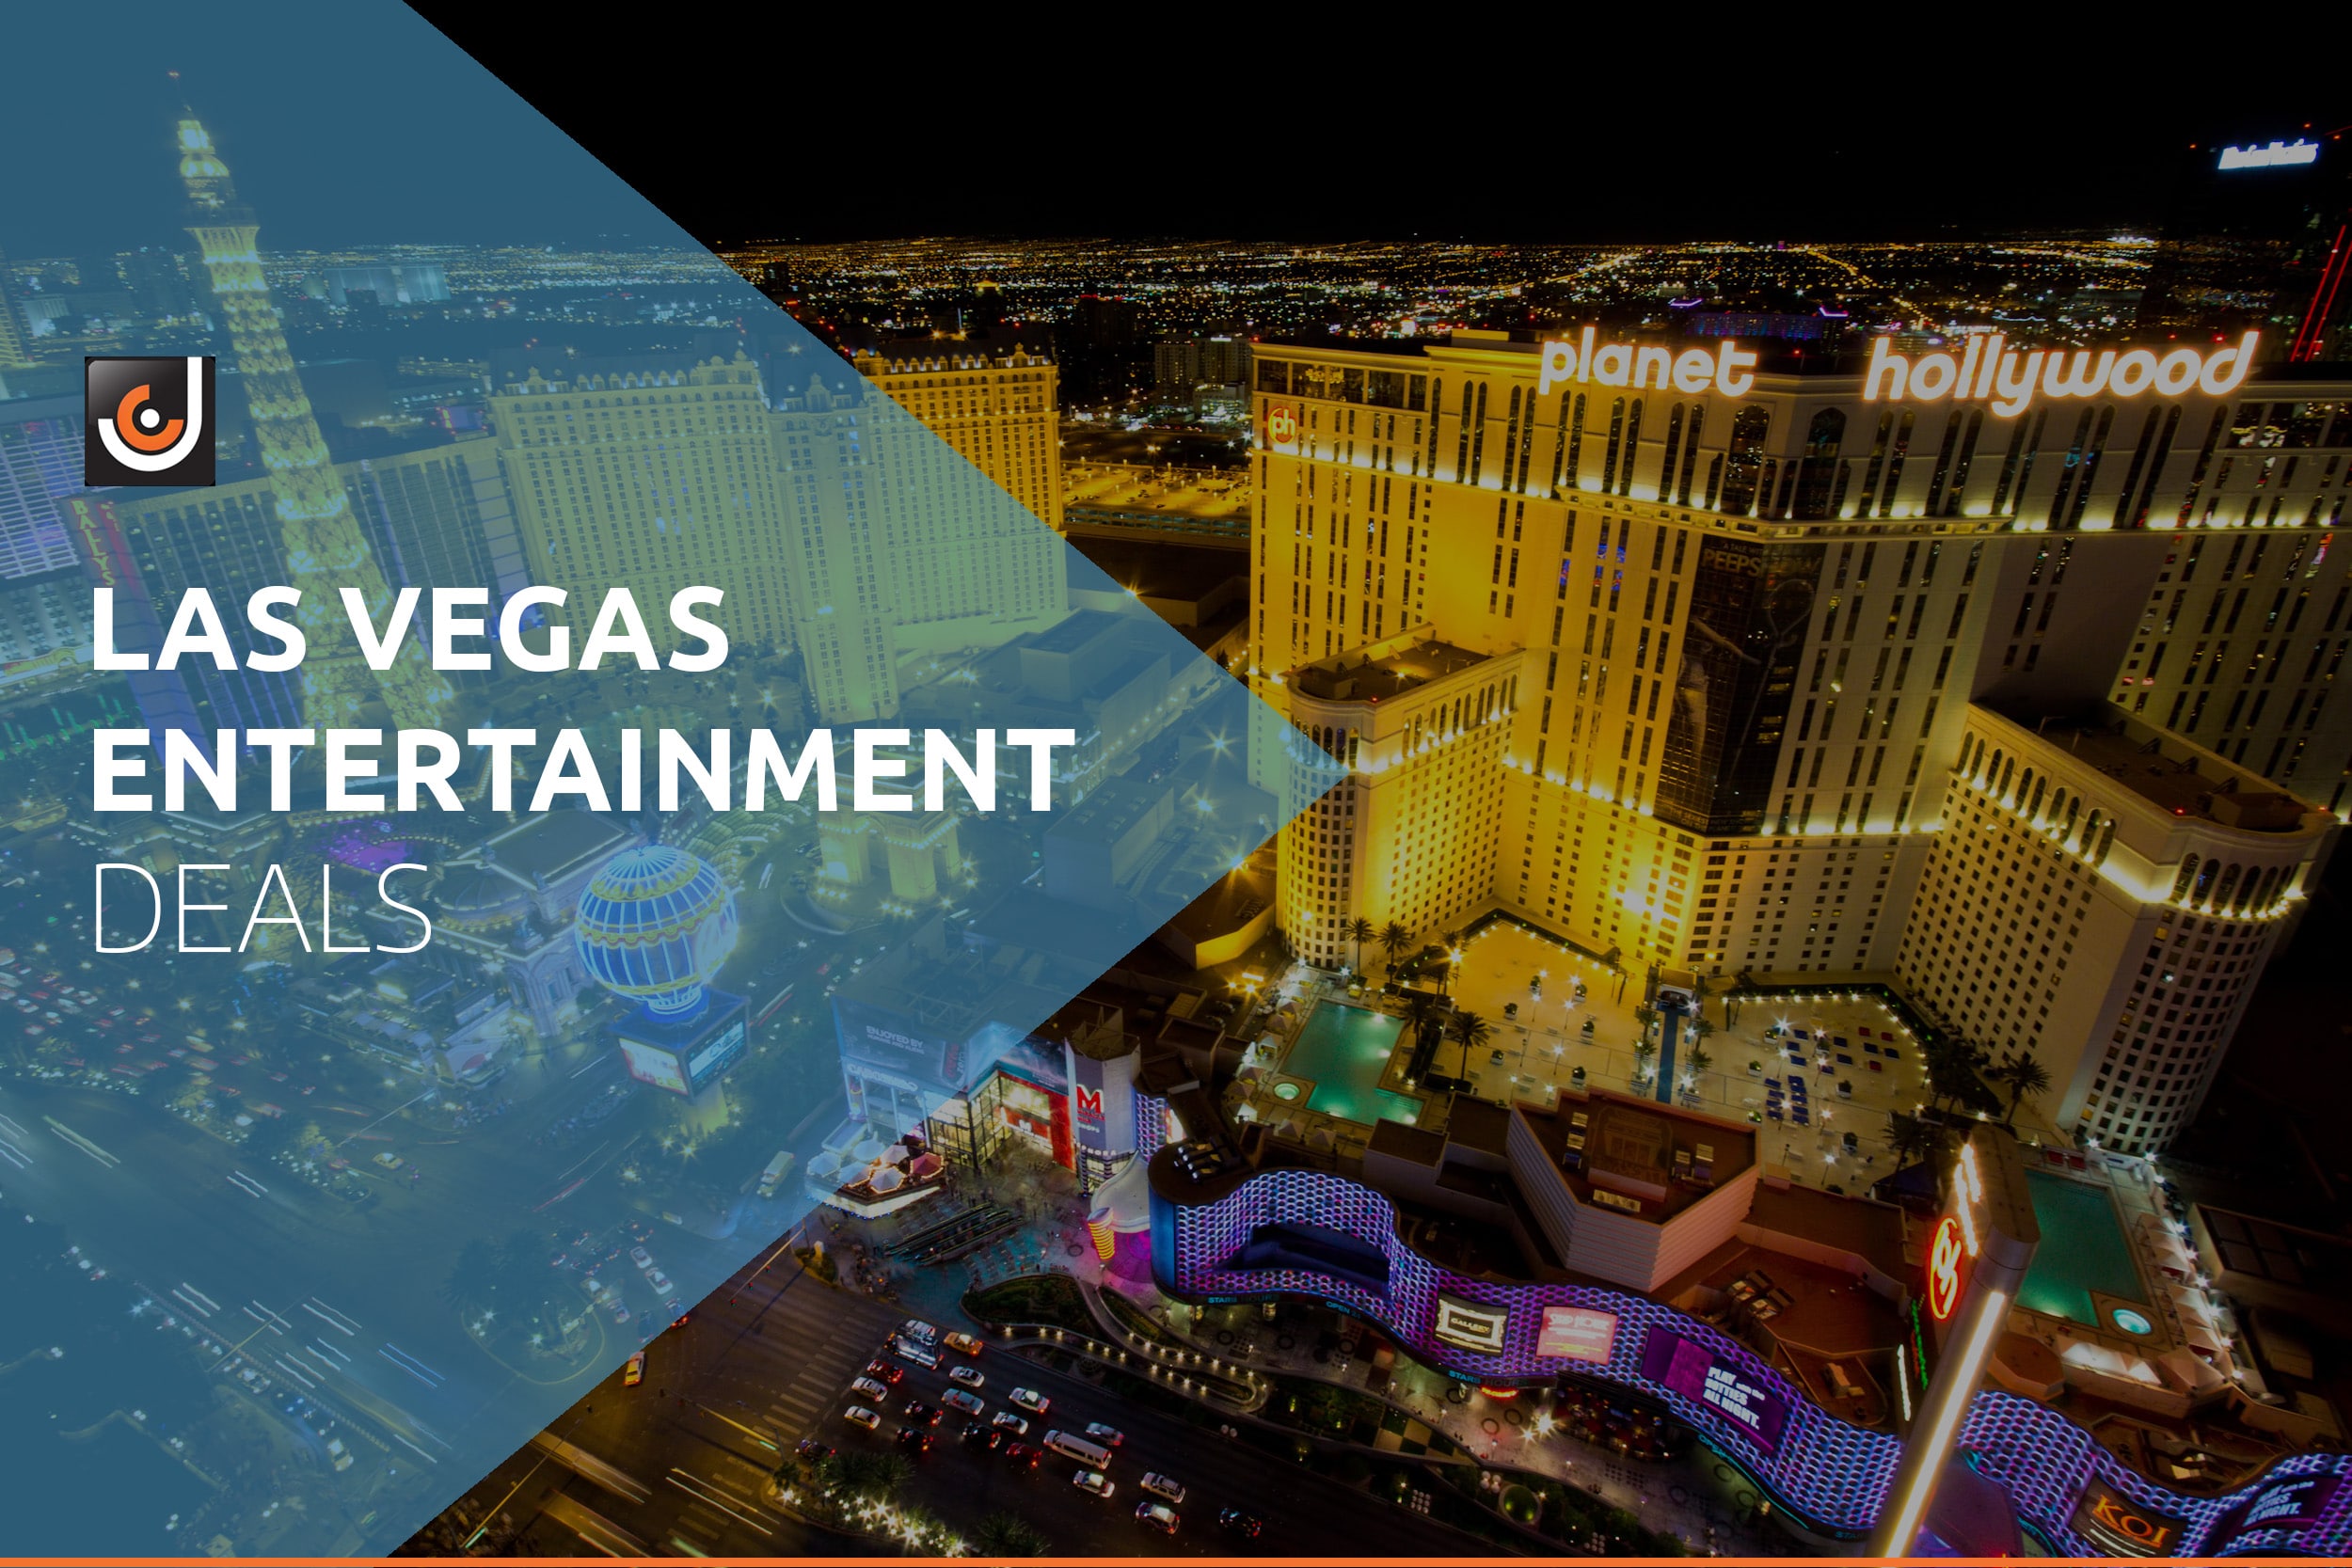 Las Vegas Entertainment Deals